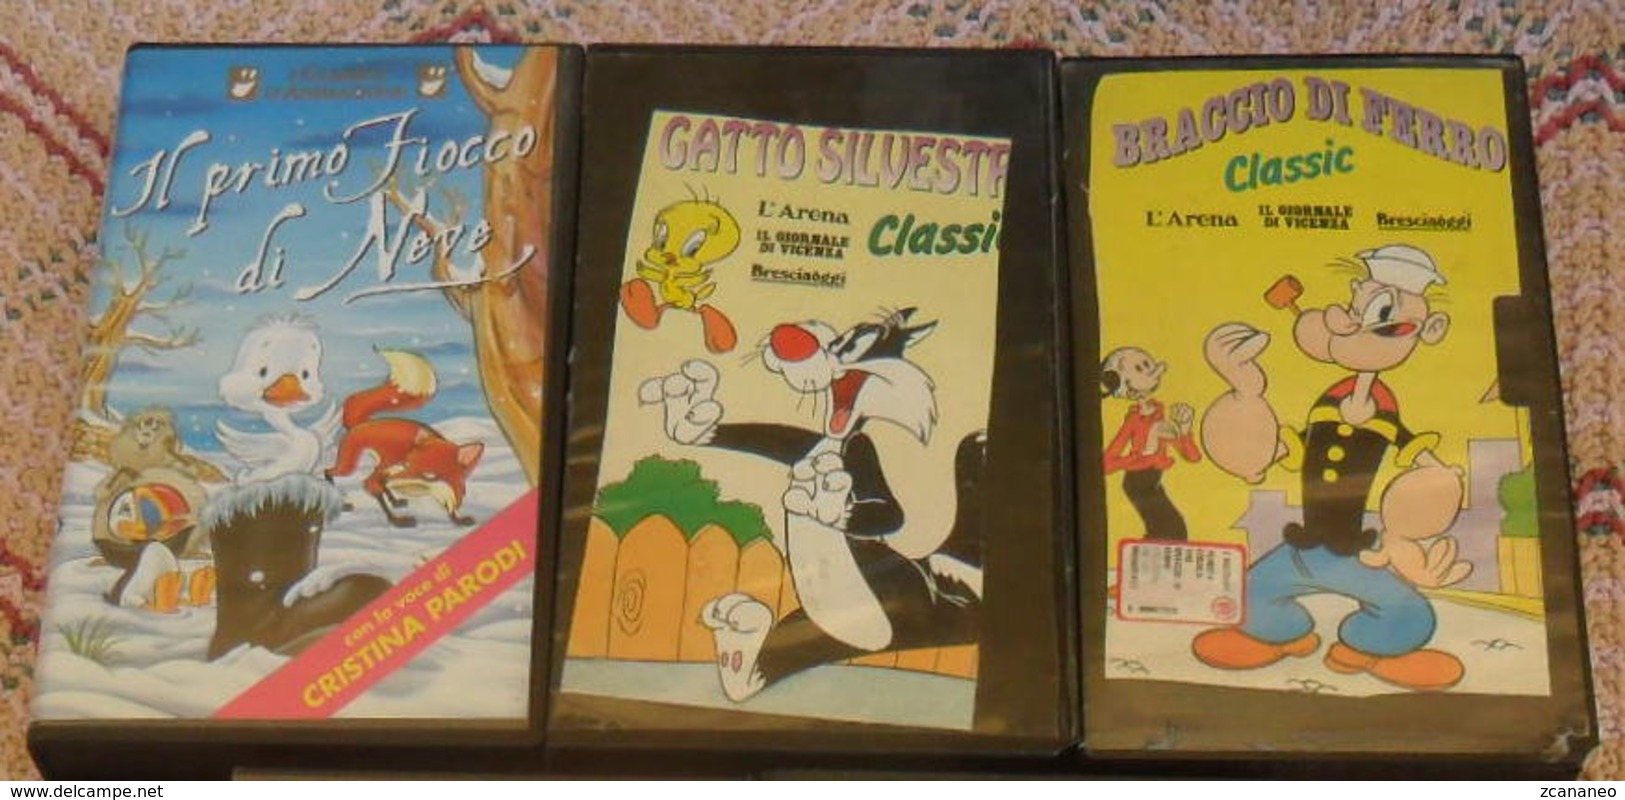 3 VHS CARTONI ANIMATI - BRACCIO DI FERRO - GATTO SILVESTRO - IL PRIMO FIOCCO DI NEVE - - Cartoni Animati